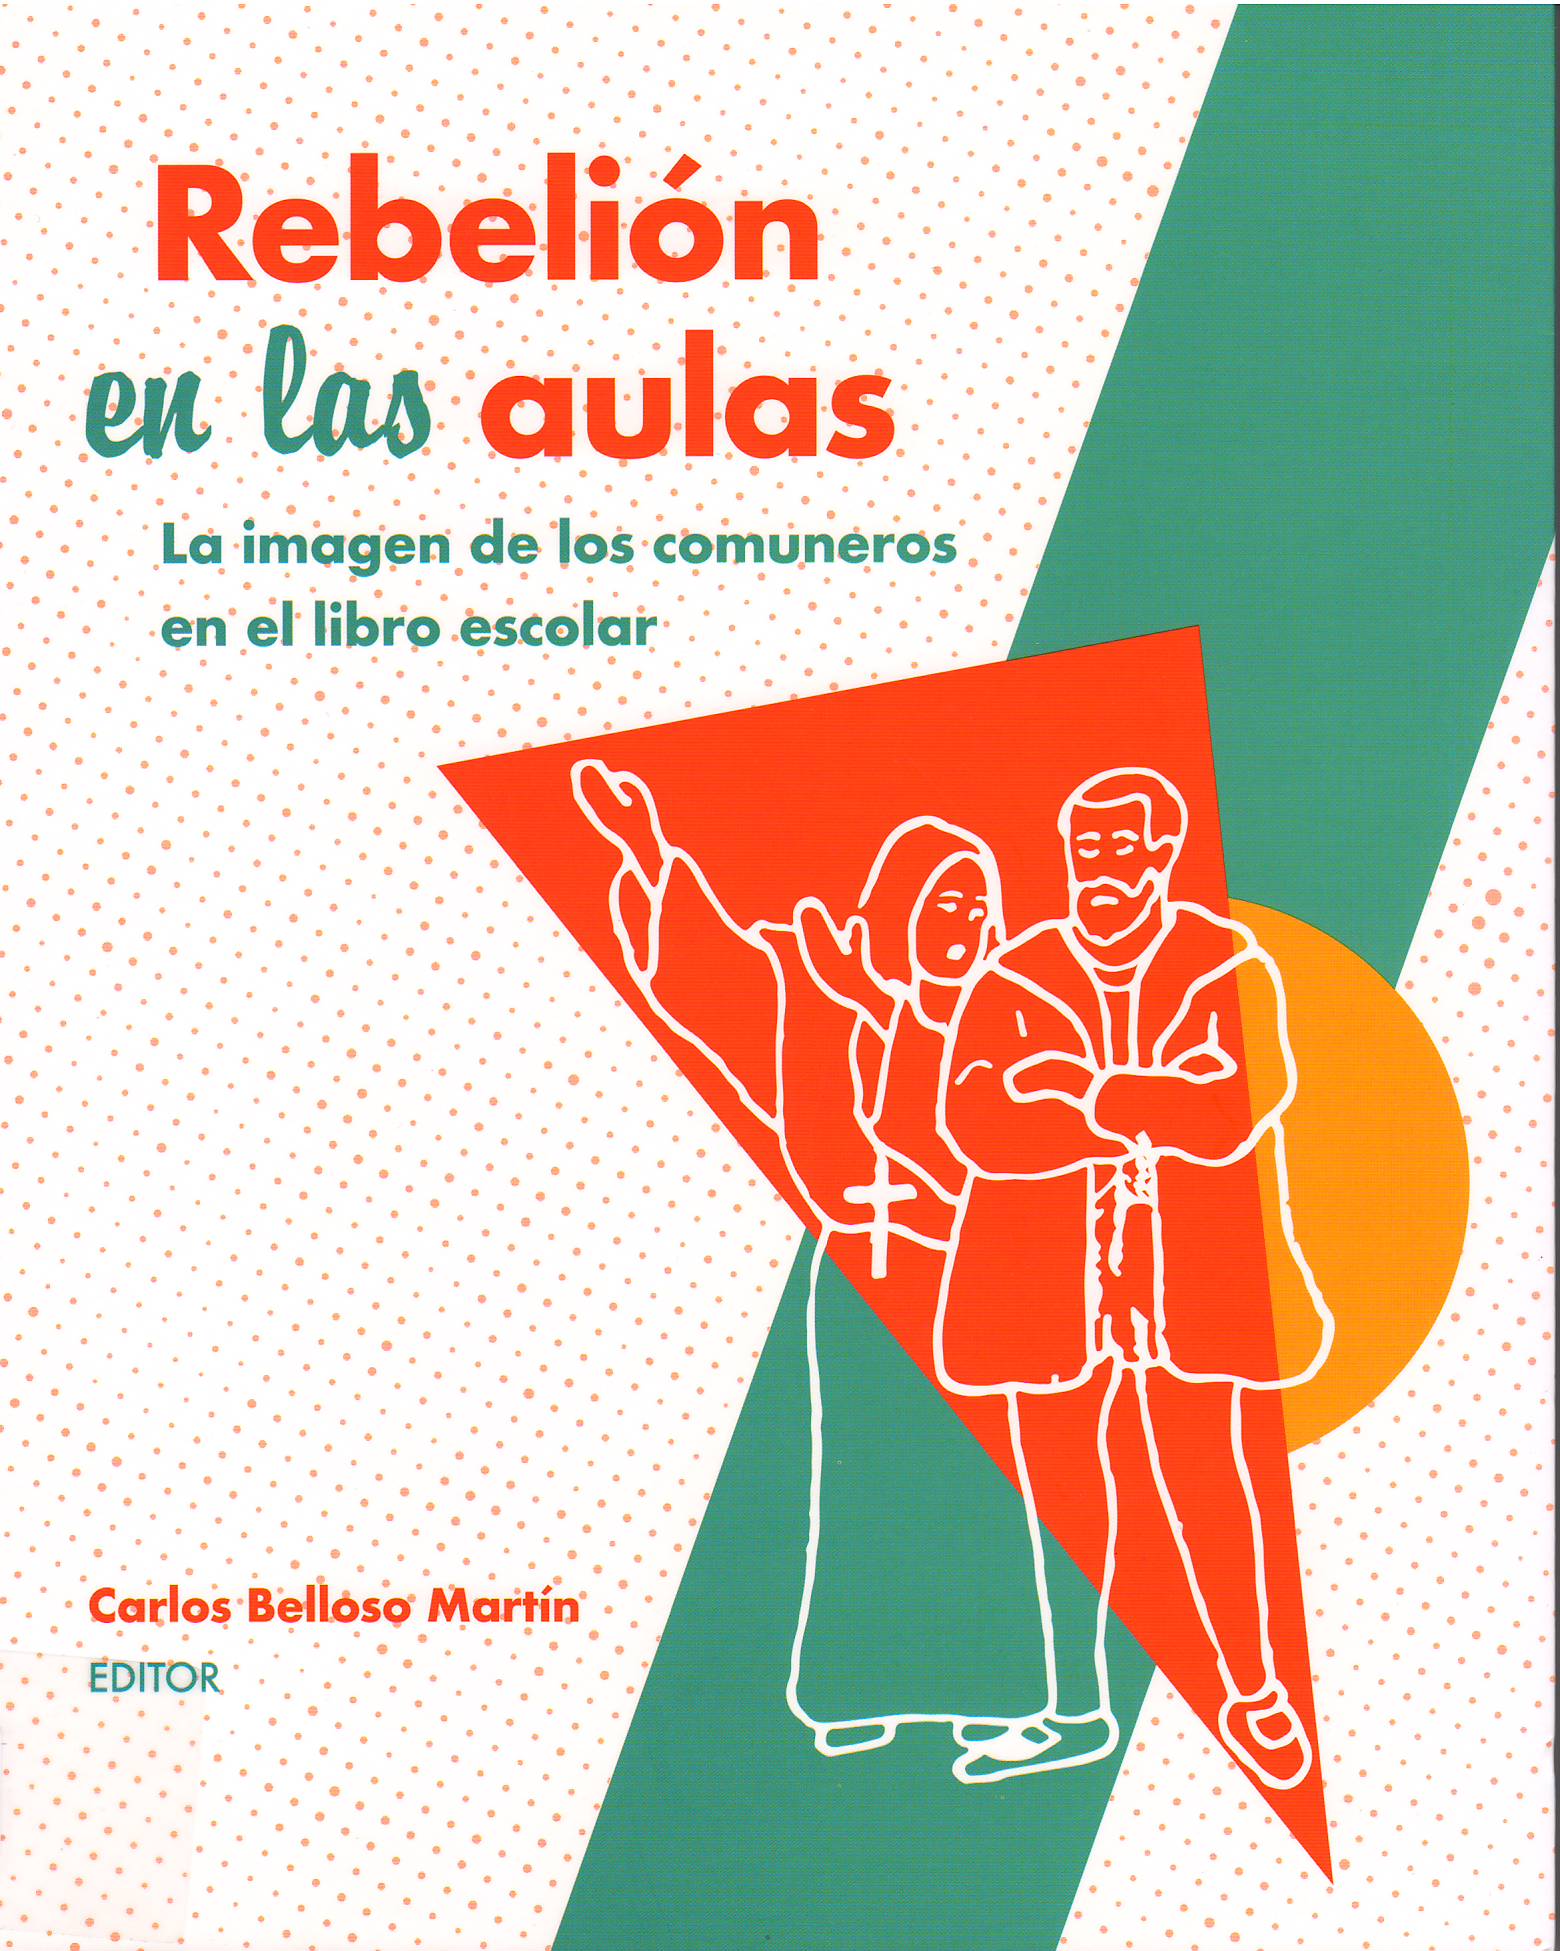 Imagen de portada del libro Rebelión en las aulas